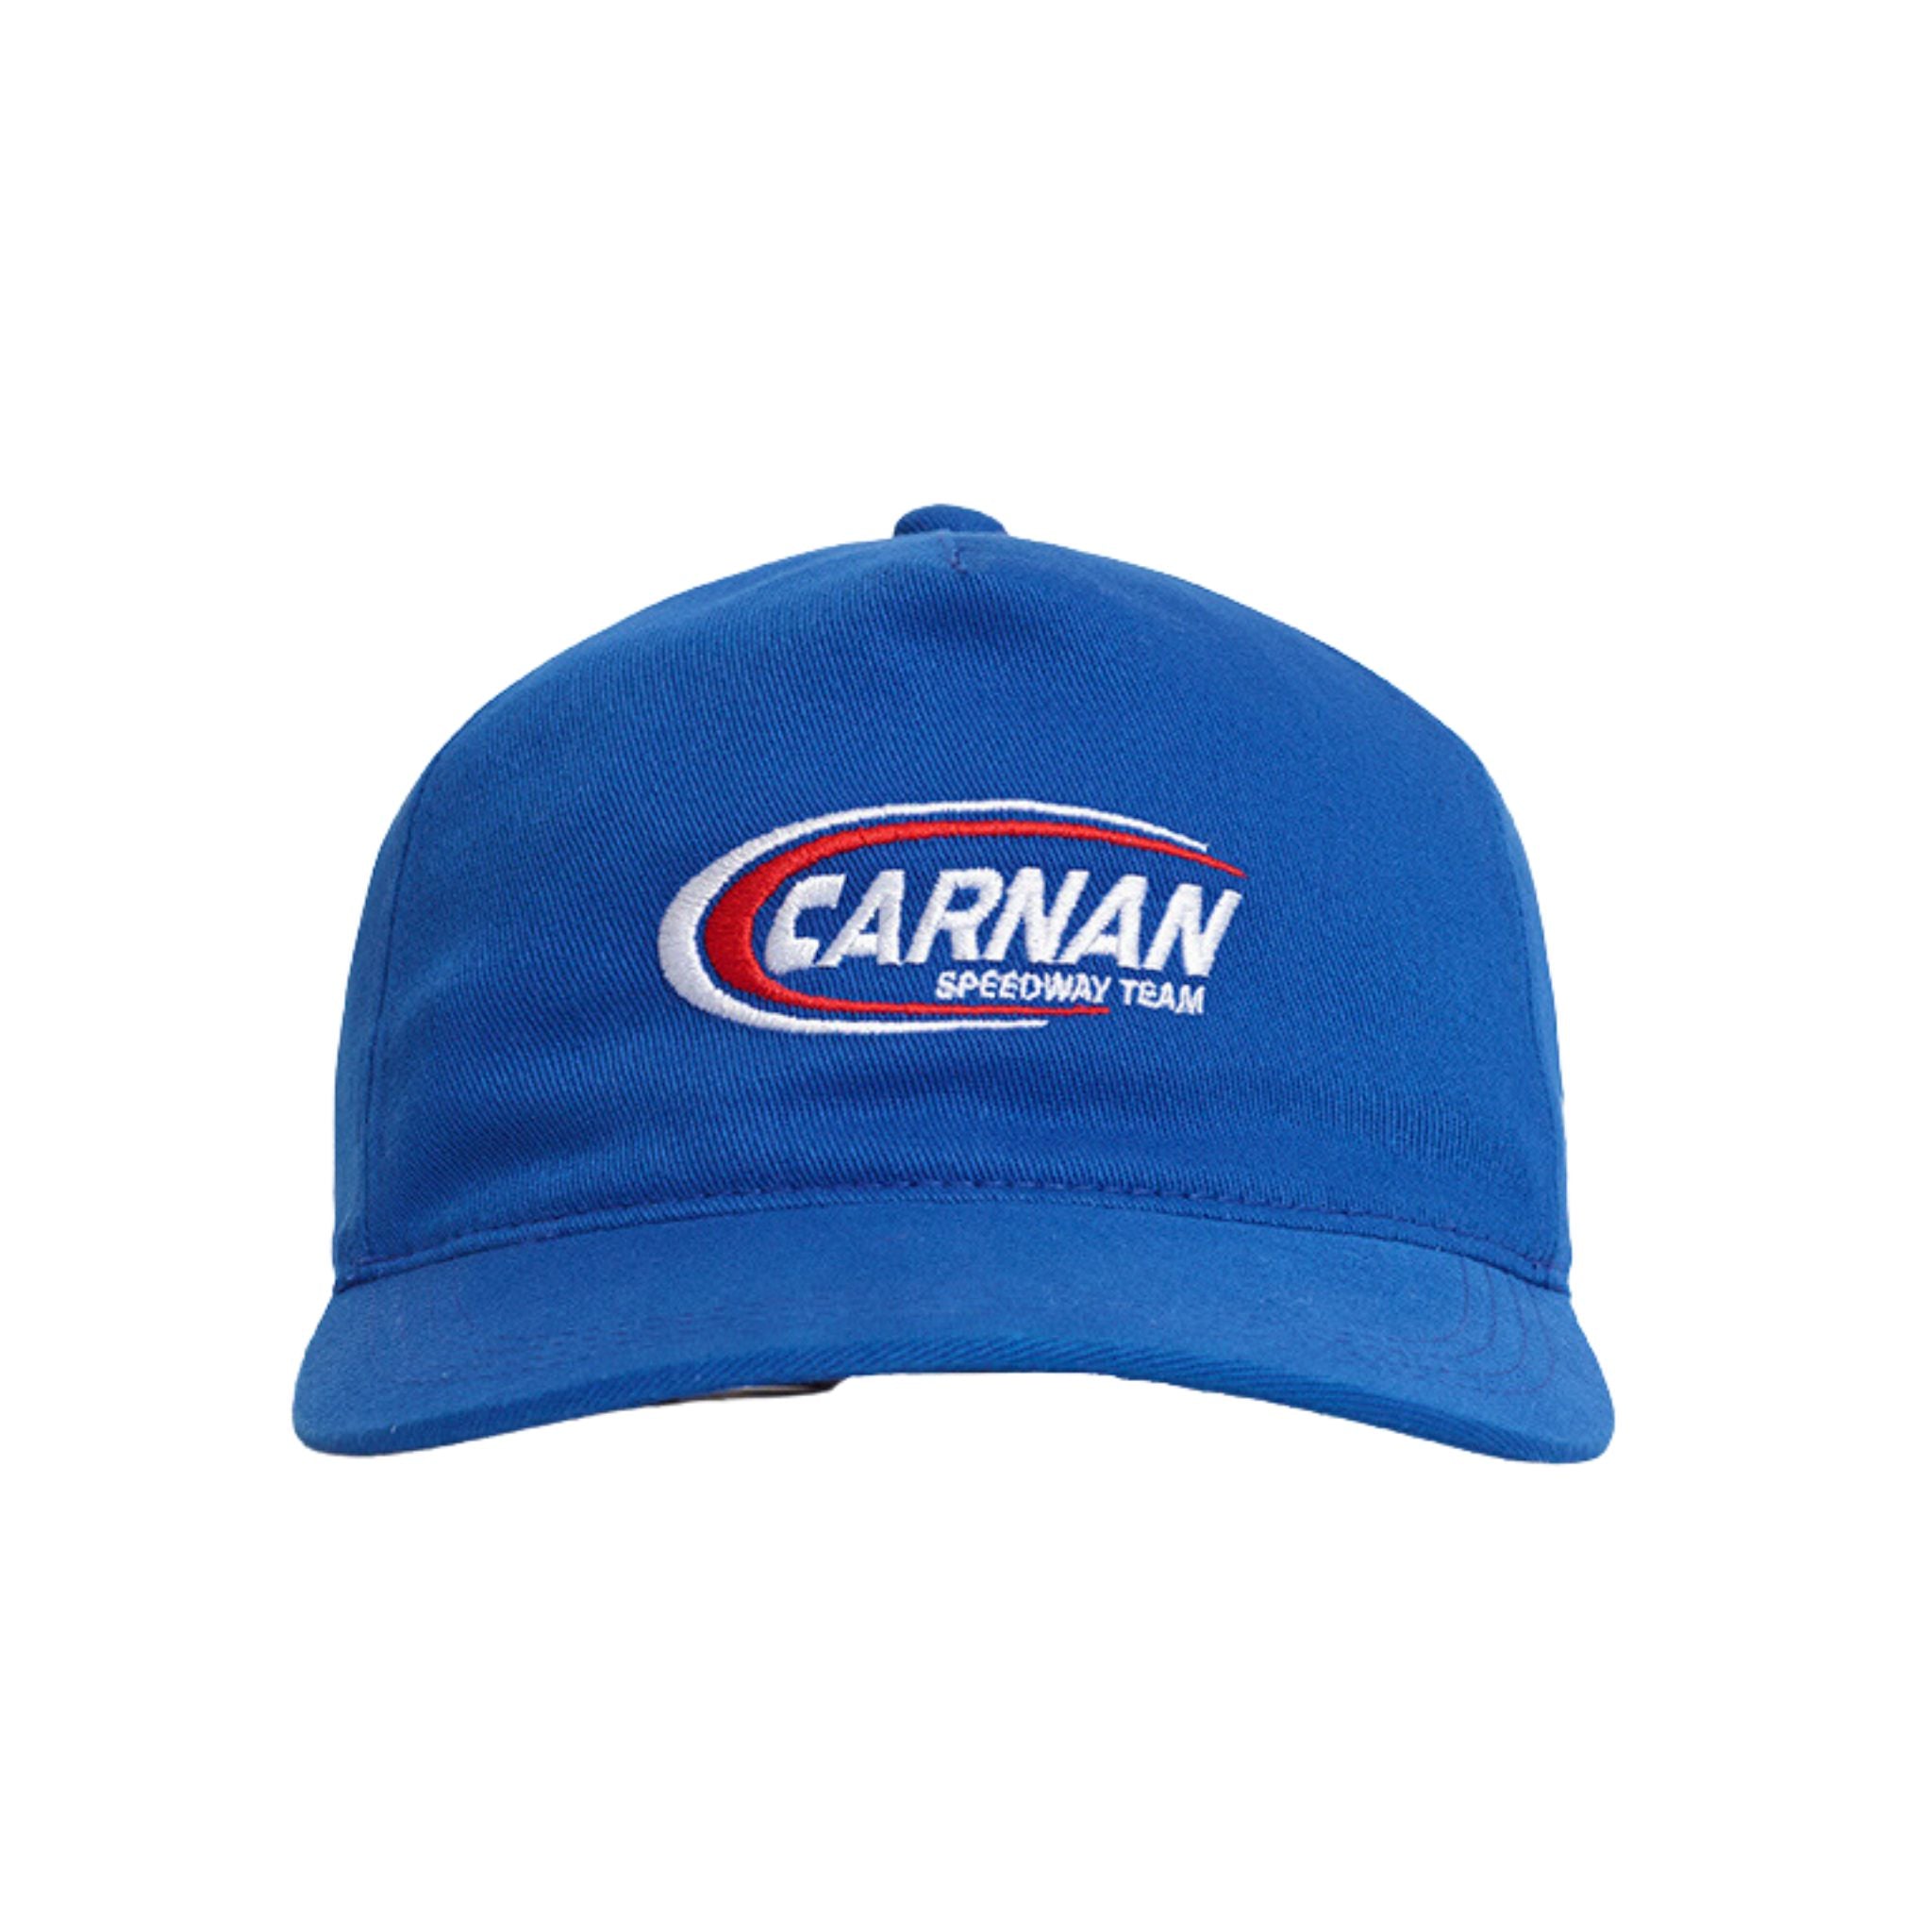 CARNAN - Garage Blue Hat - THE GAME